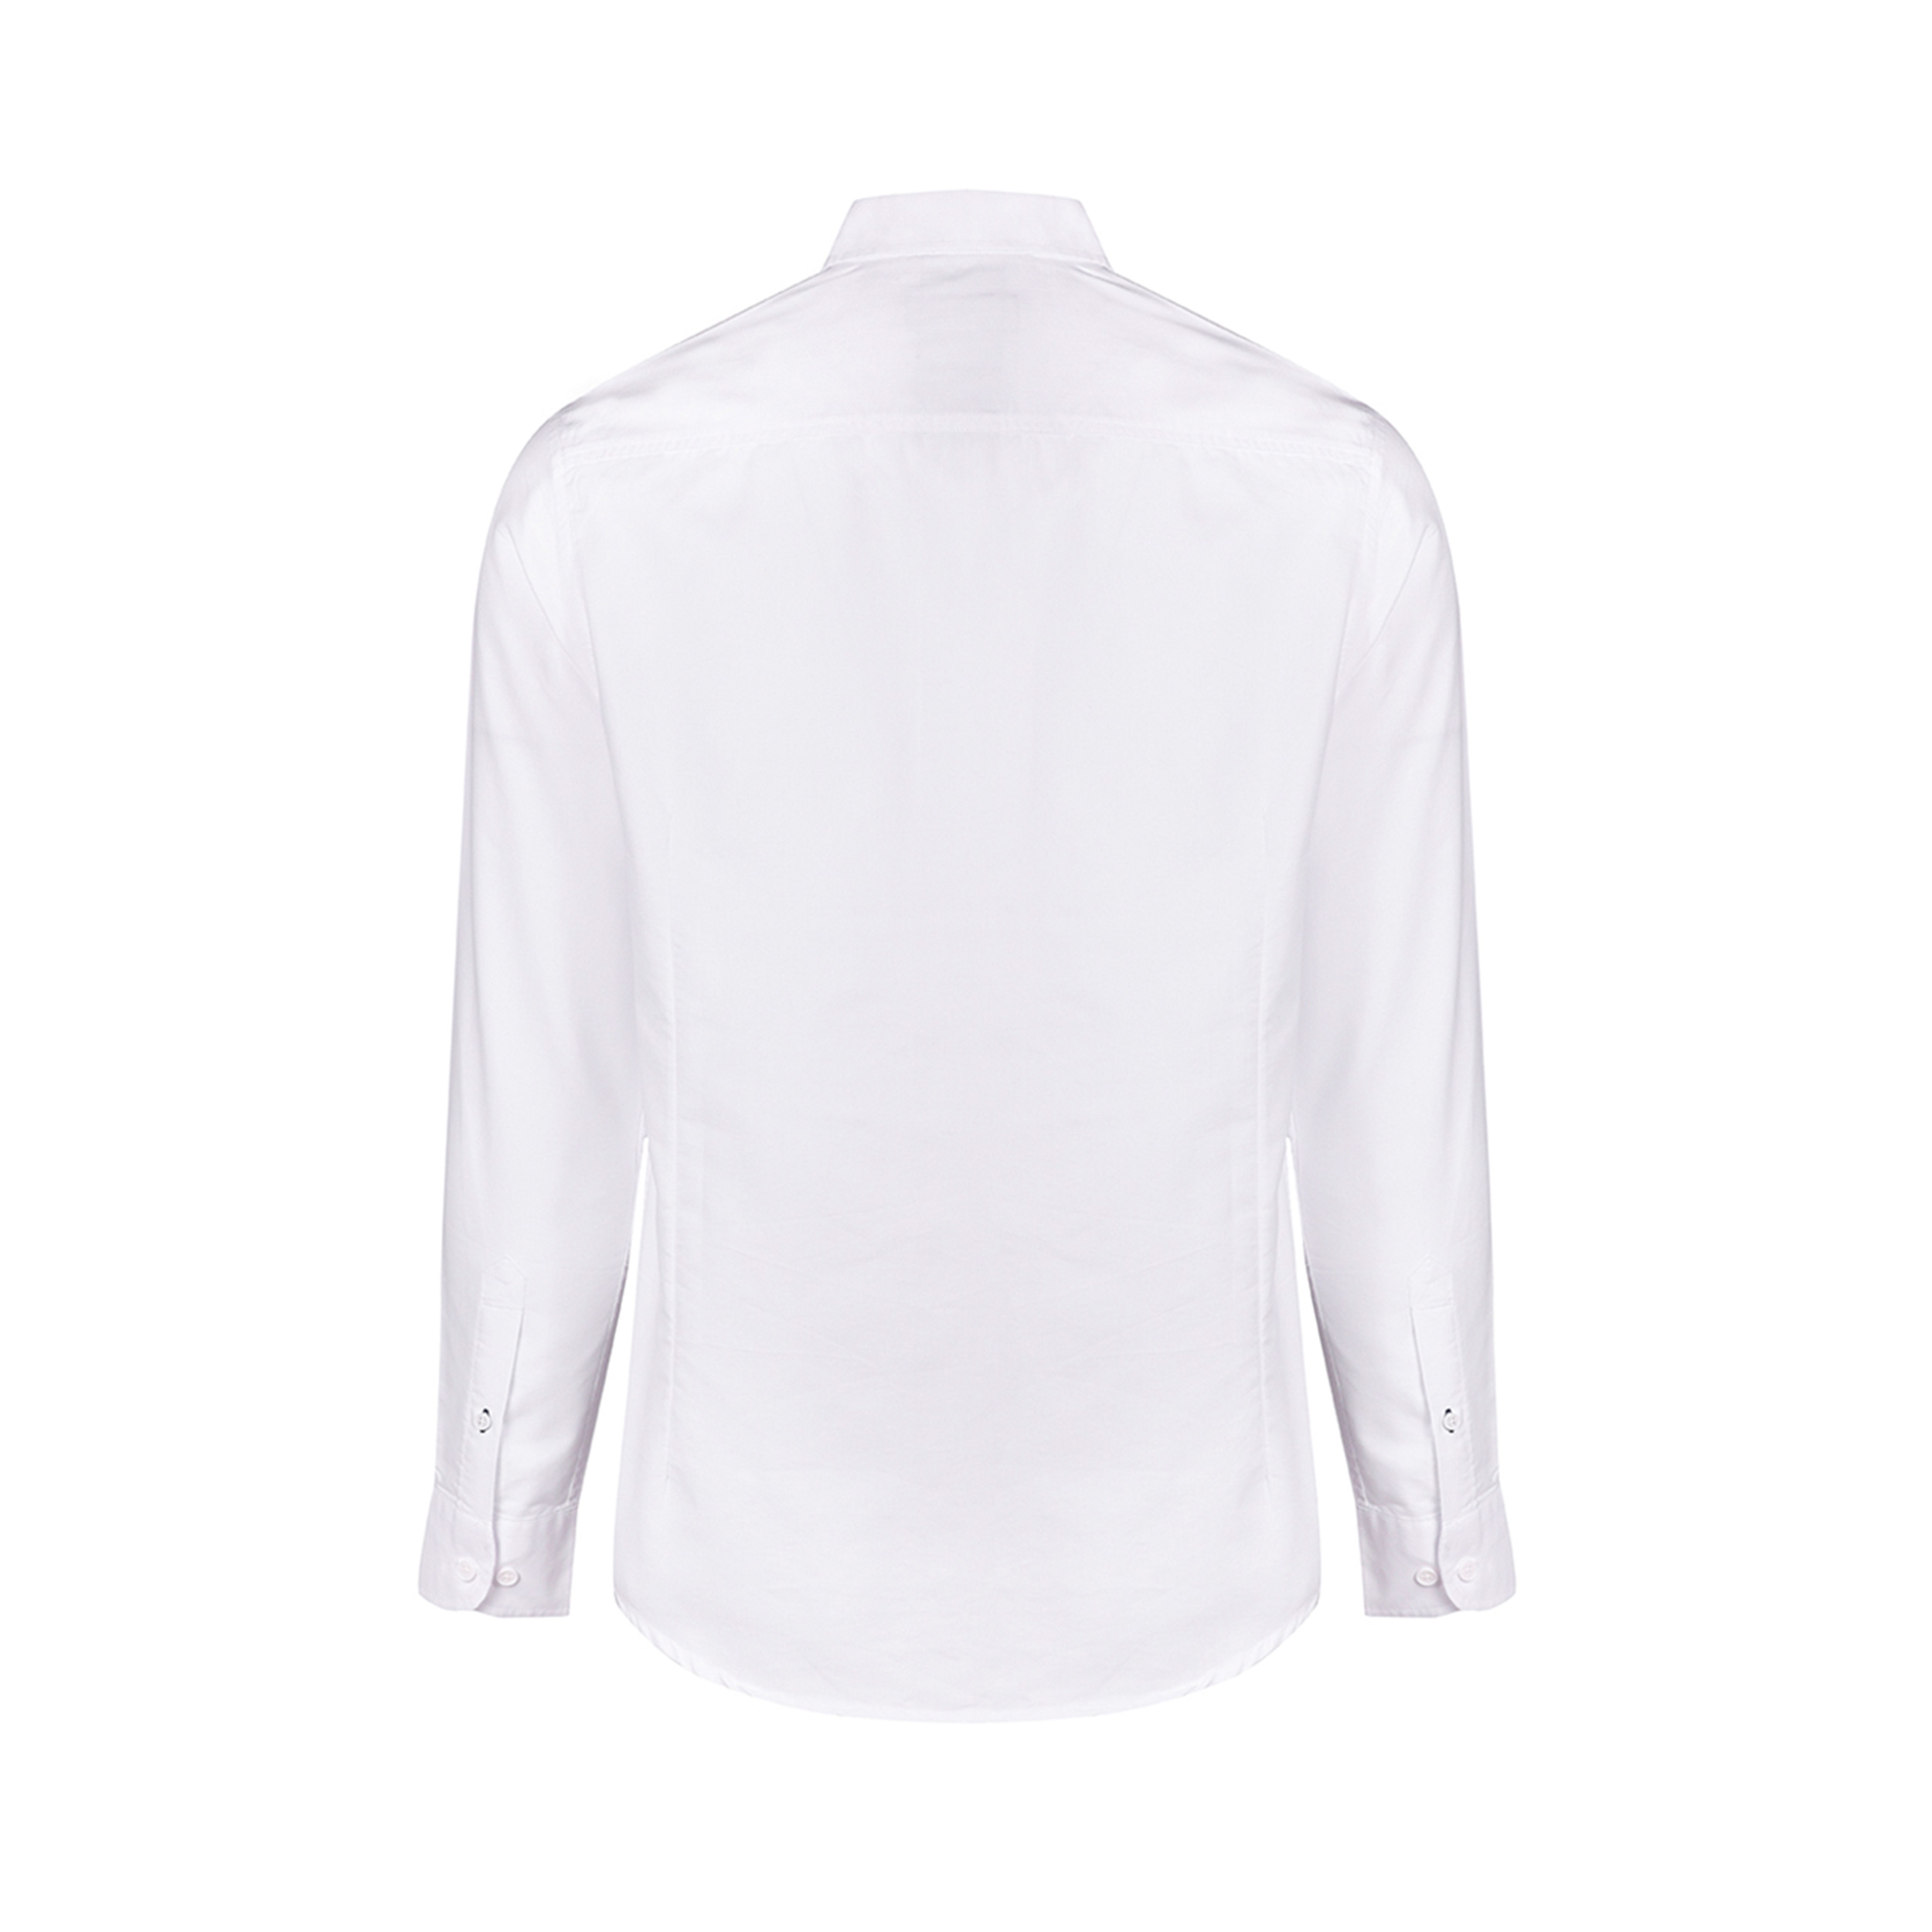 پیراهن آستین بلند مردانه بادی اسپینر مدل 1255 کد 1 رنگ سفید -  - 2